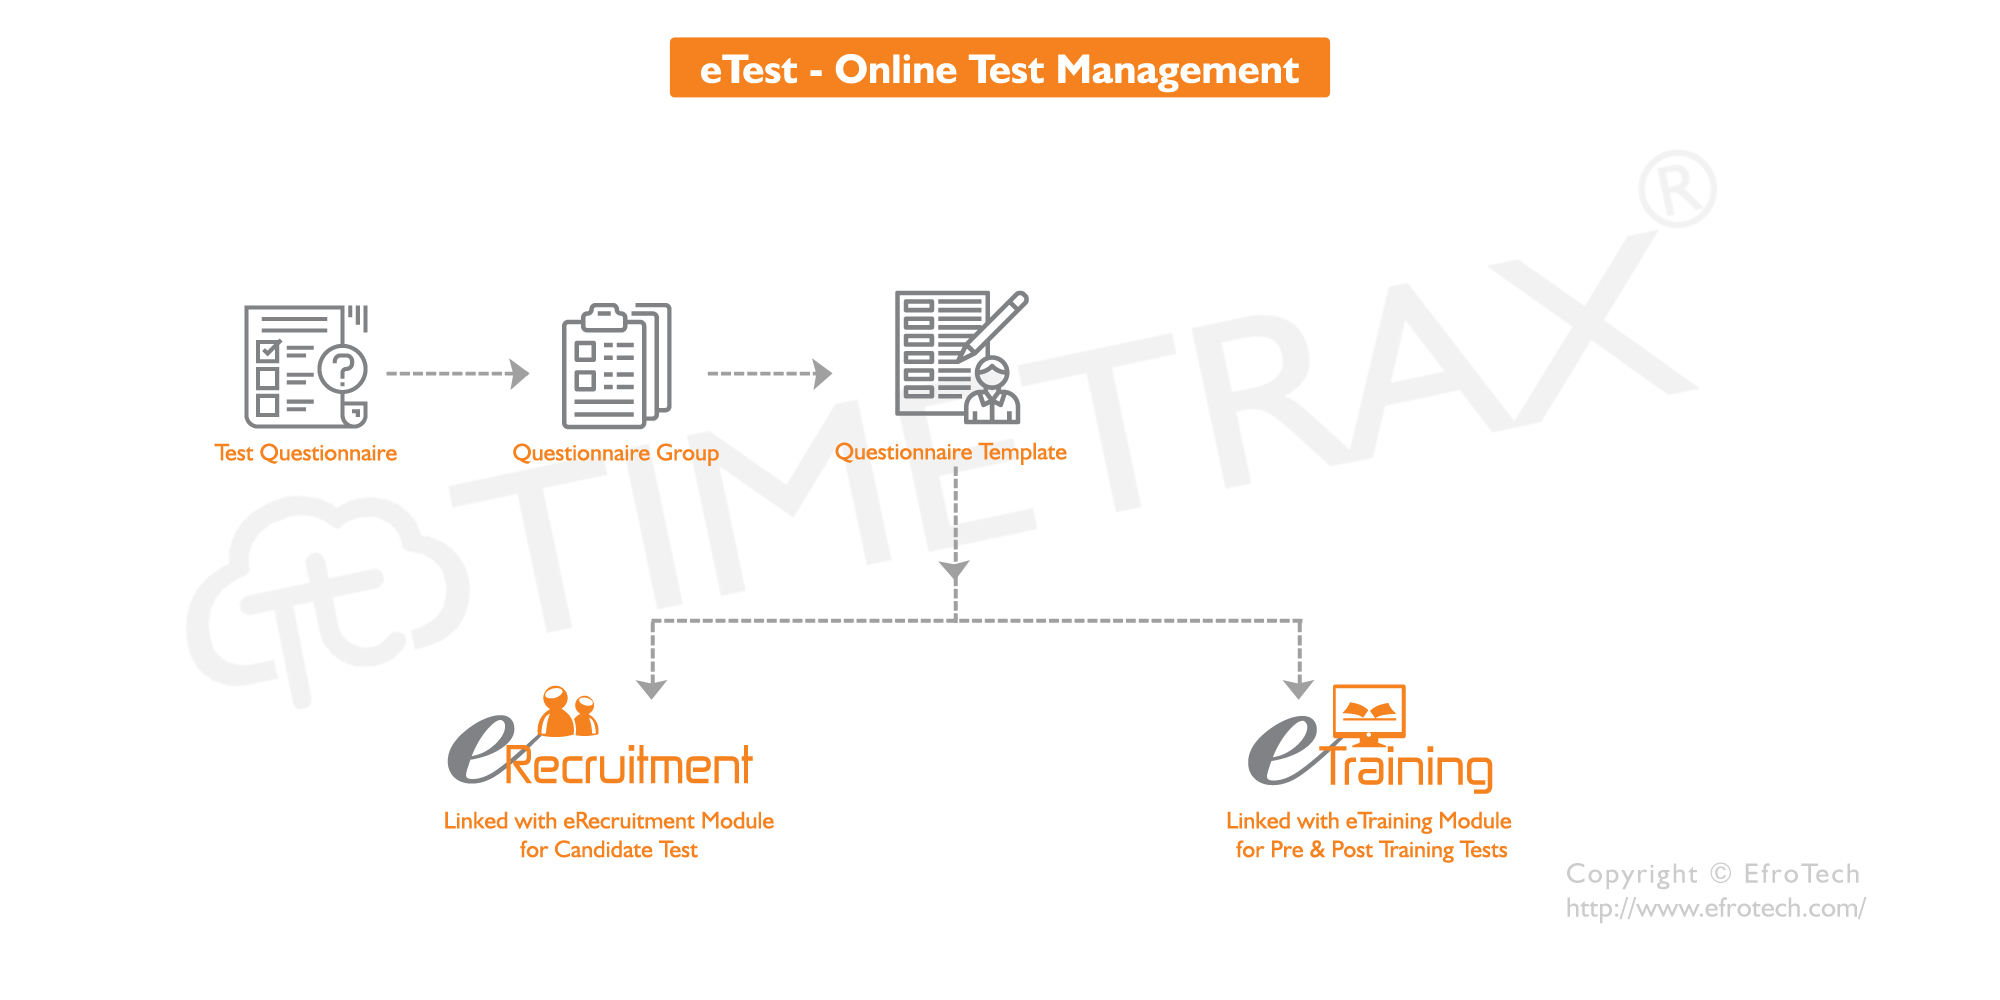 Online Test Management Software Workflow